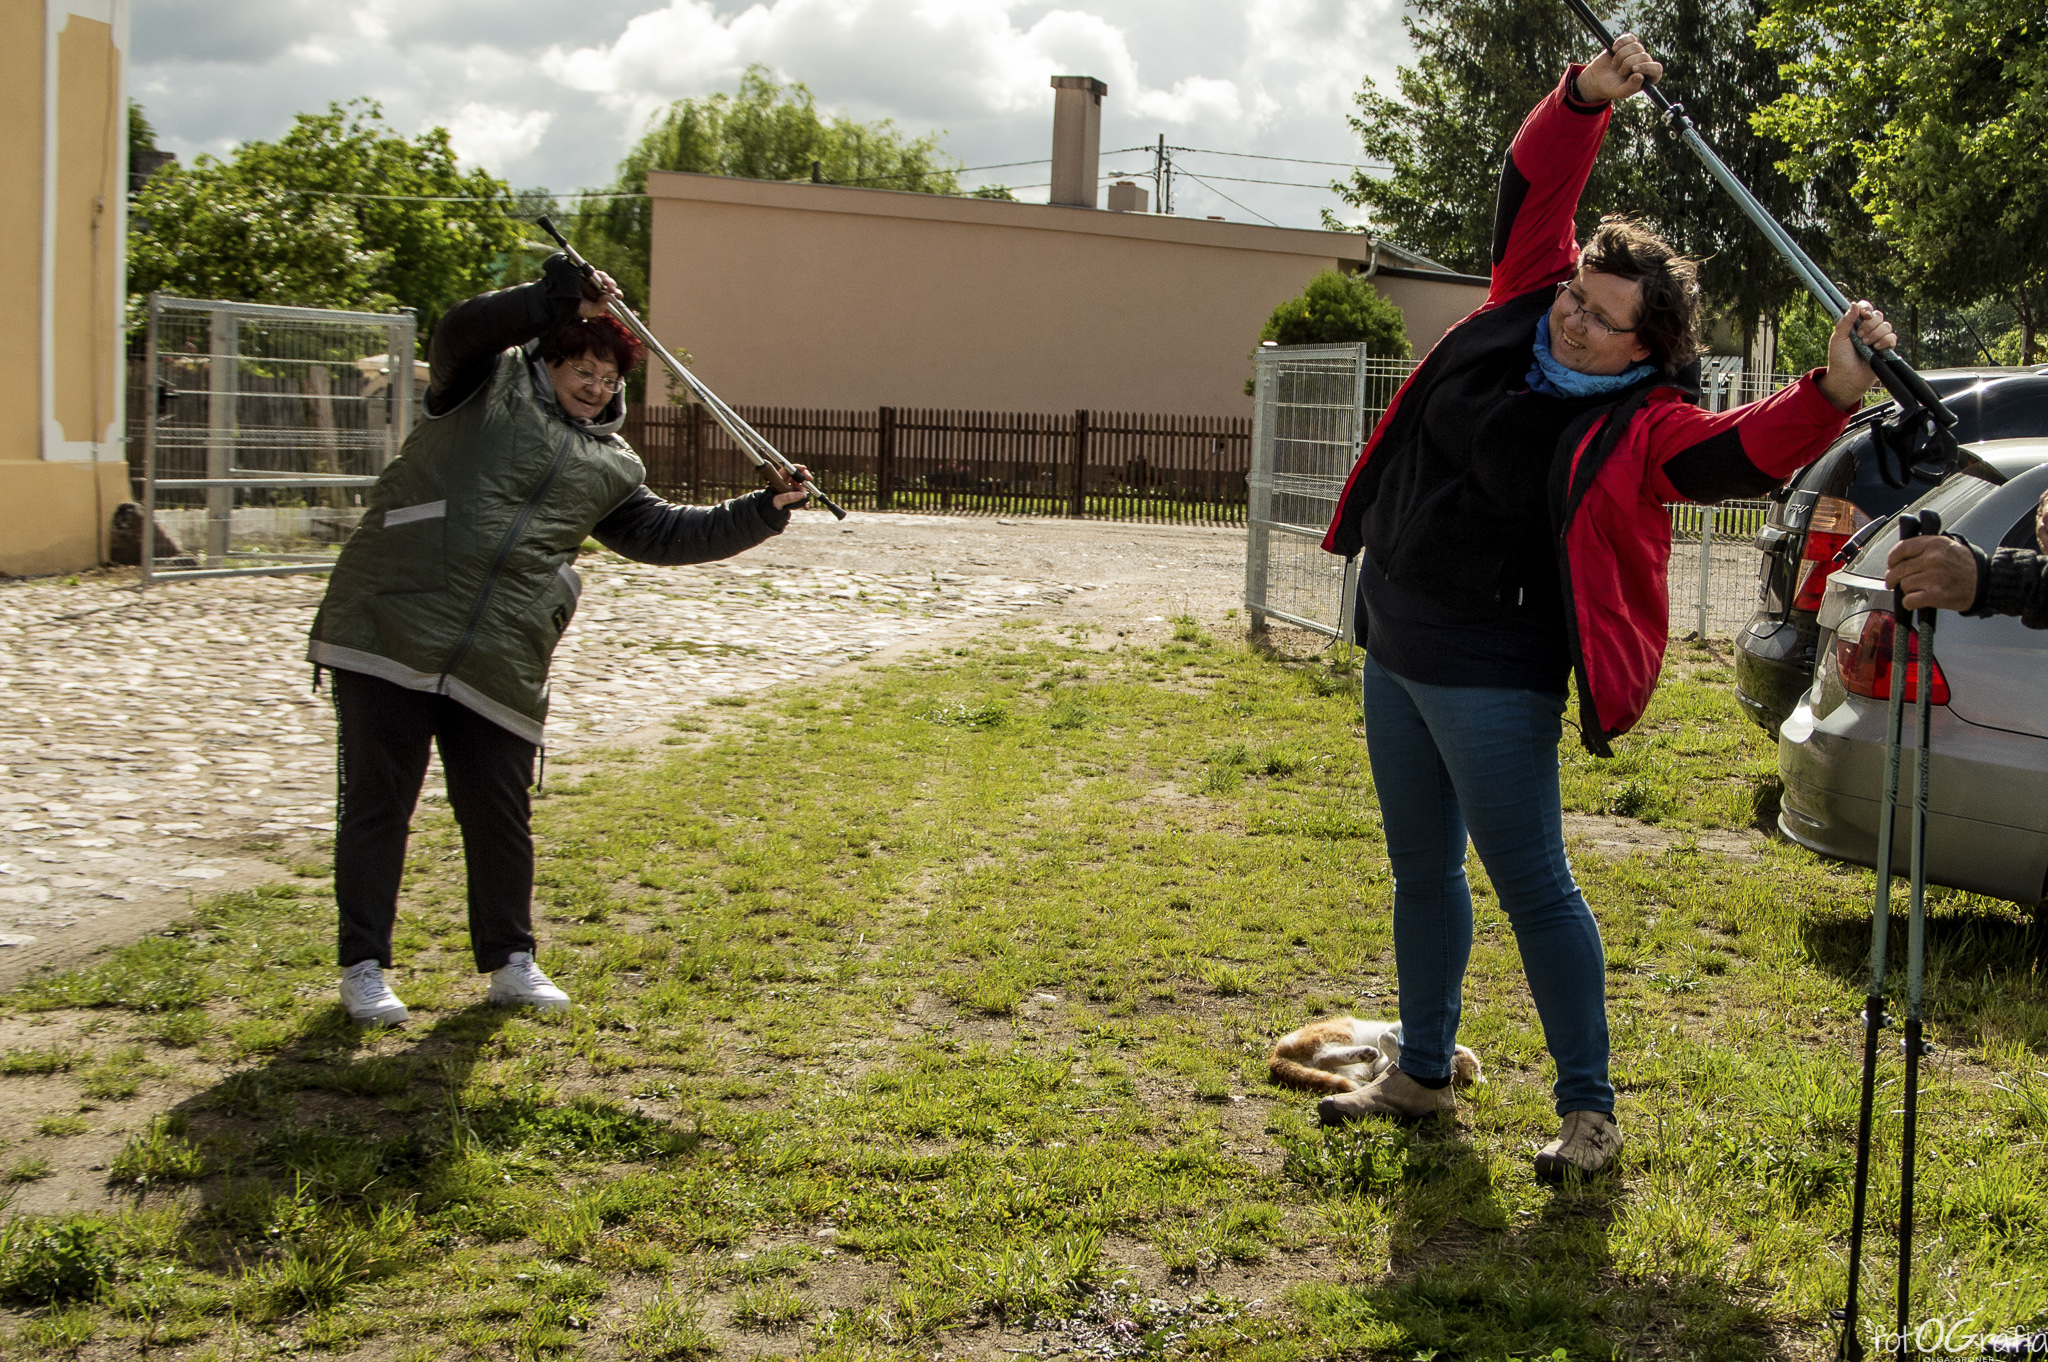 Zdjęcie przedstawia grupę ludzi biorcą udział ćwiczeniach z kijkami.